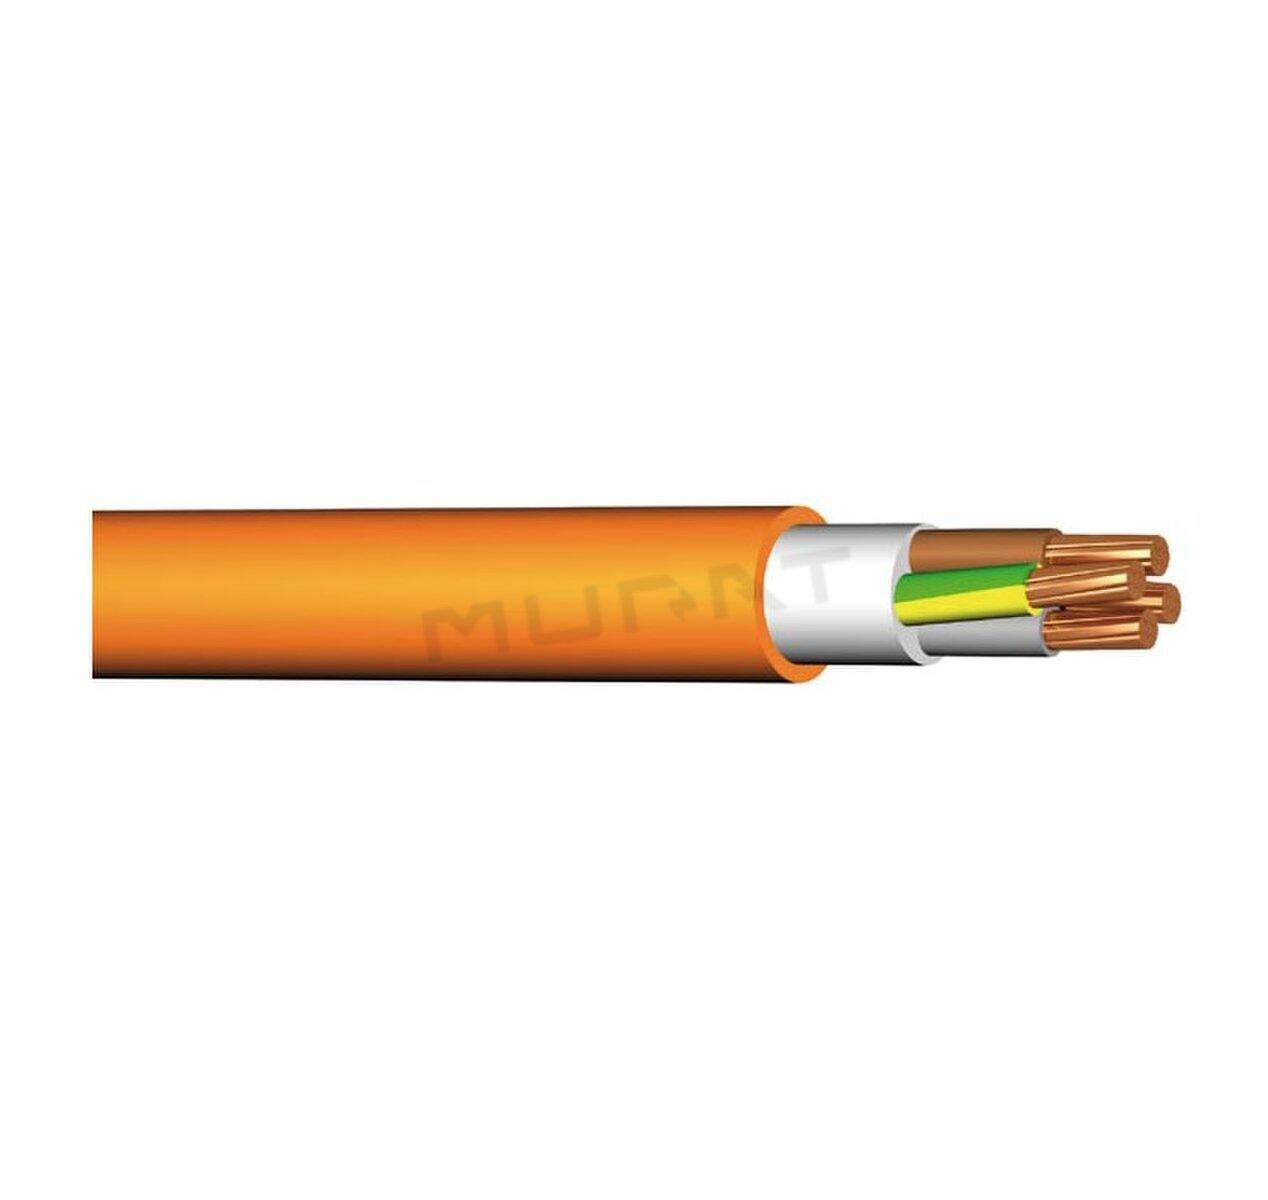 Kábel PRAFlaSafe +X-J 4x35 mm2 RM 1–CXKH–R+B2ca s1d1a1